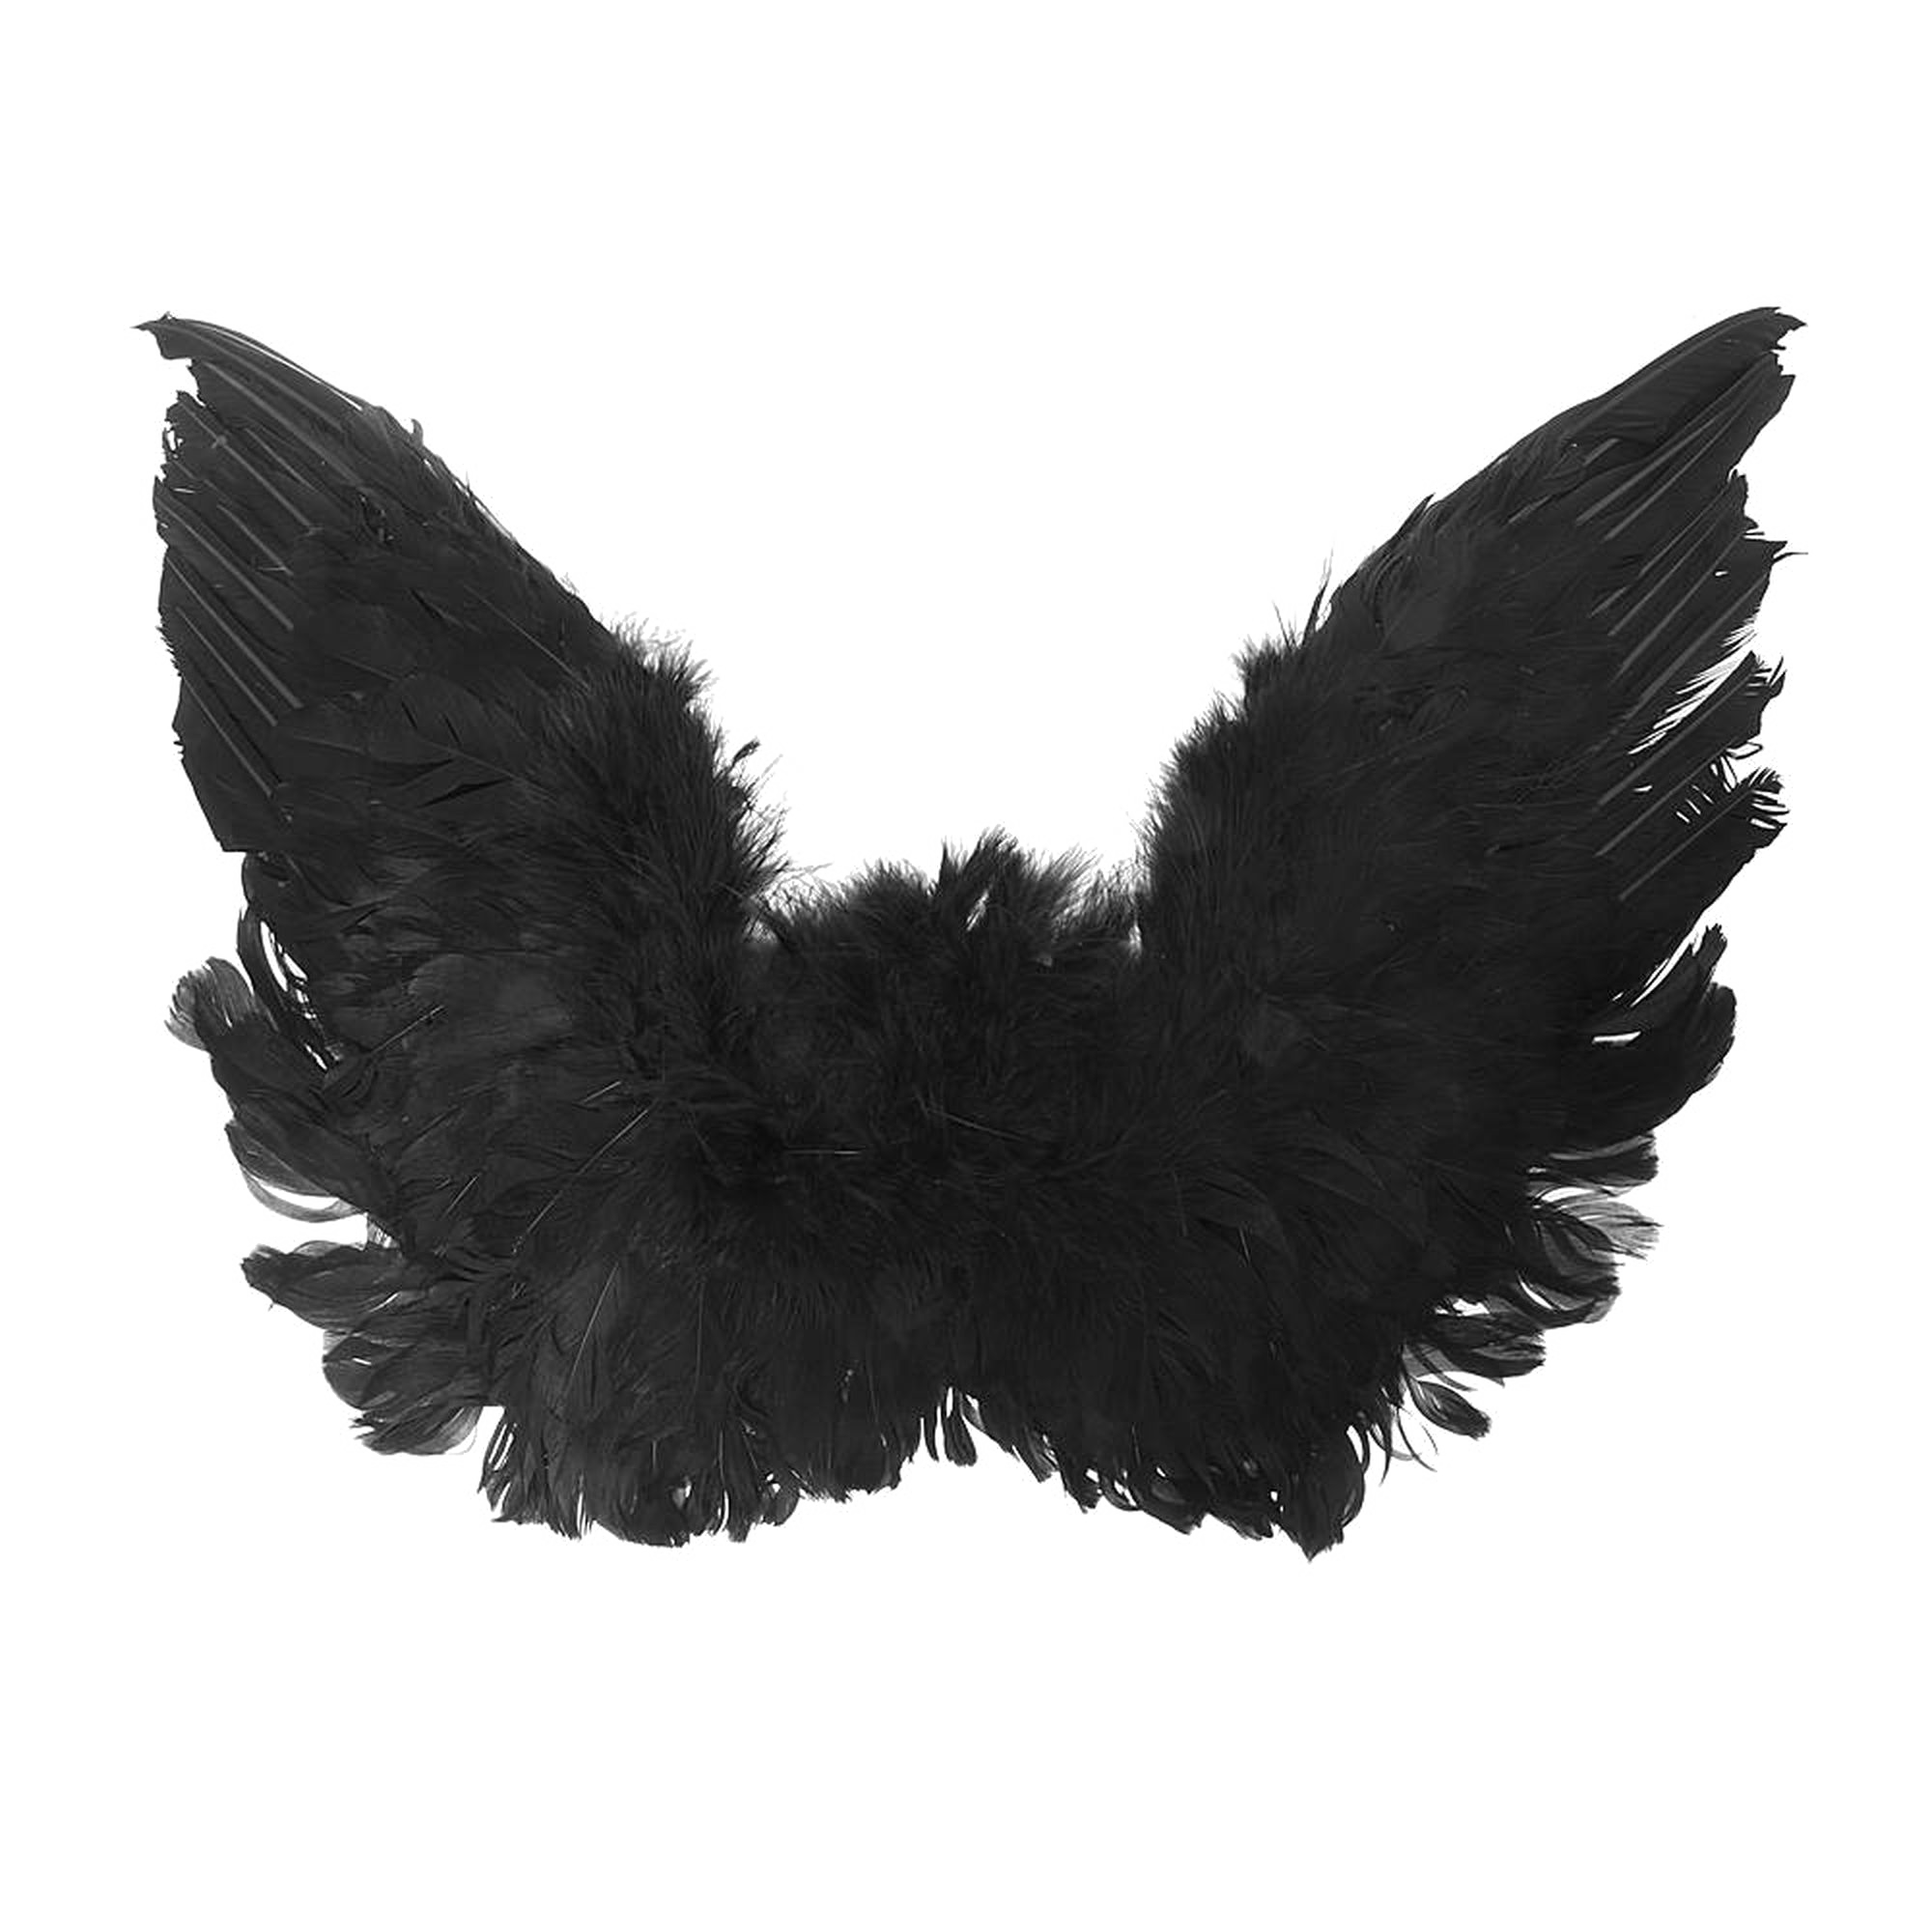 Imagen de PNG de alas de ángel negron de alta calidad